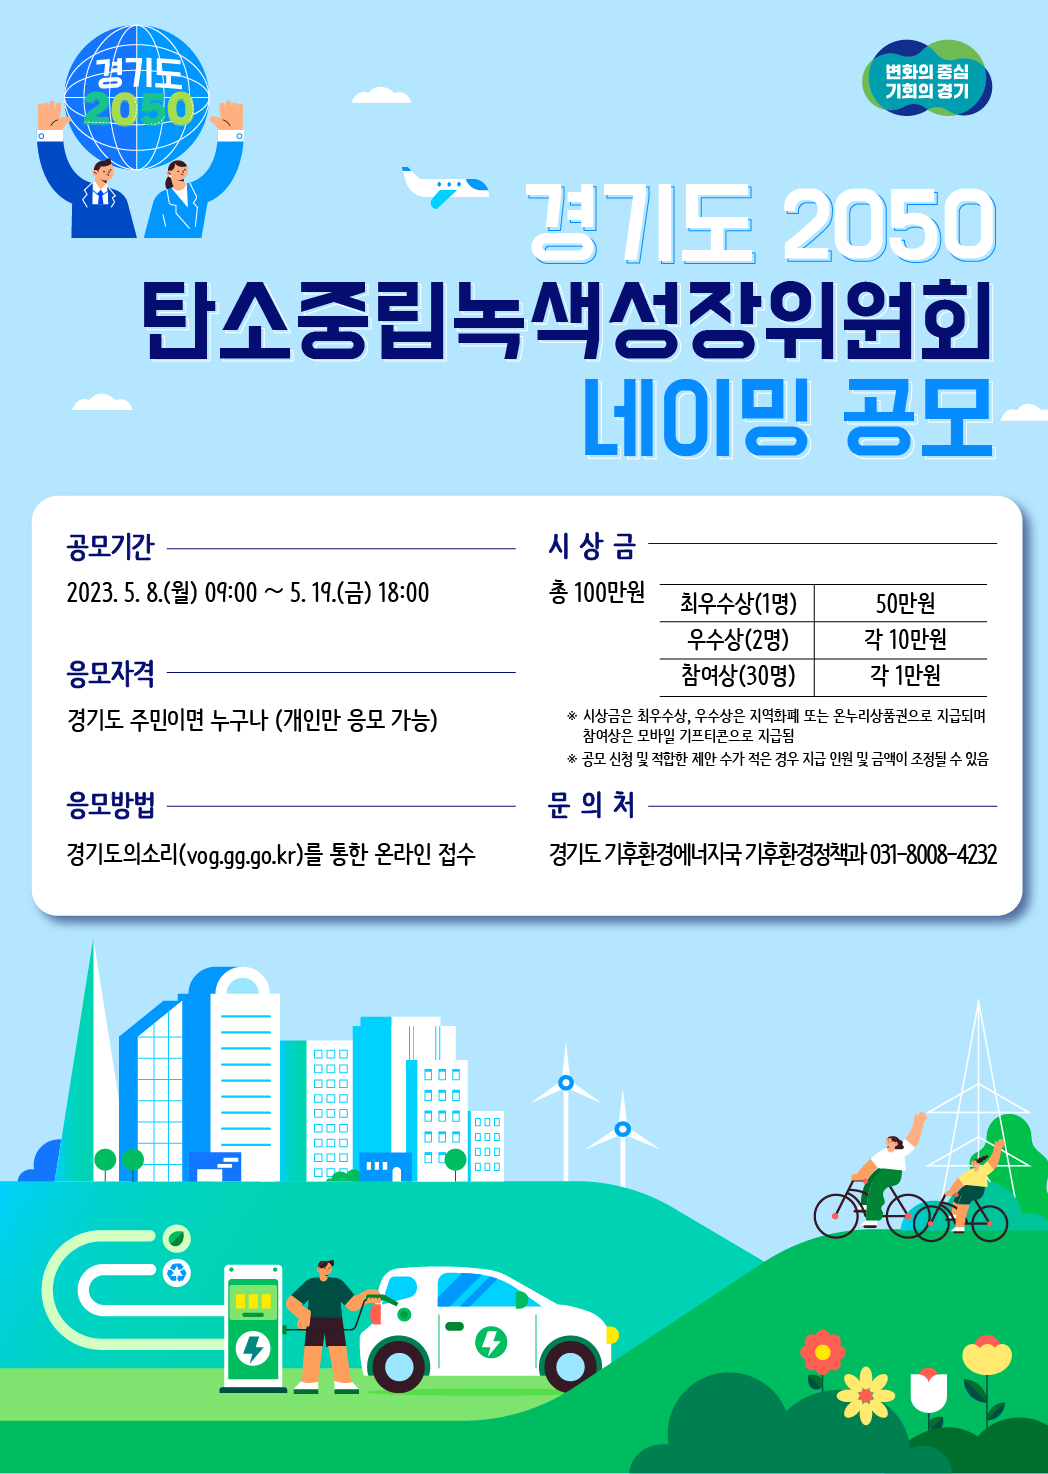 「경기도 2050 탄소중립녹색성장위원회 네이밍」 공모 포스터